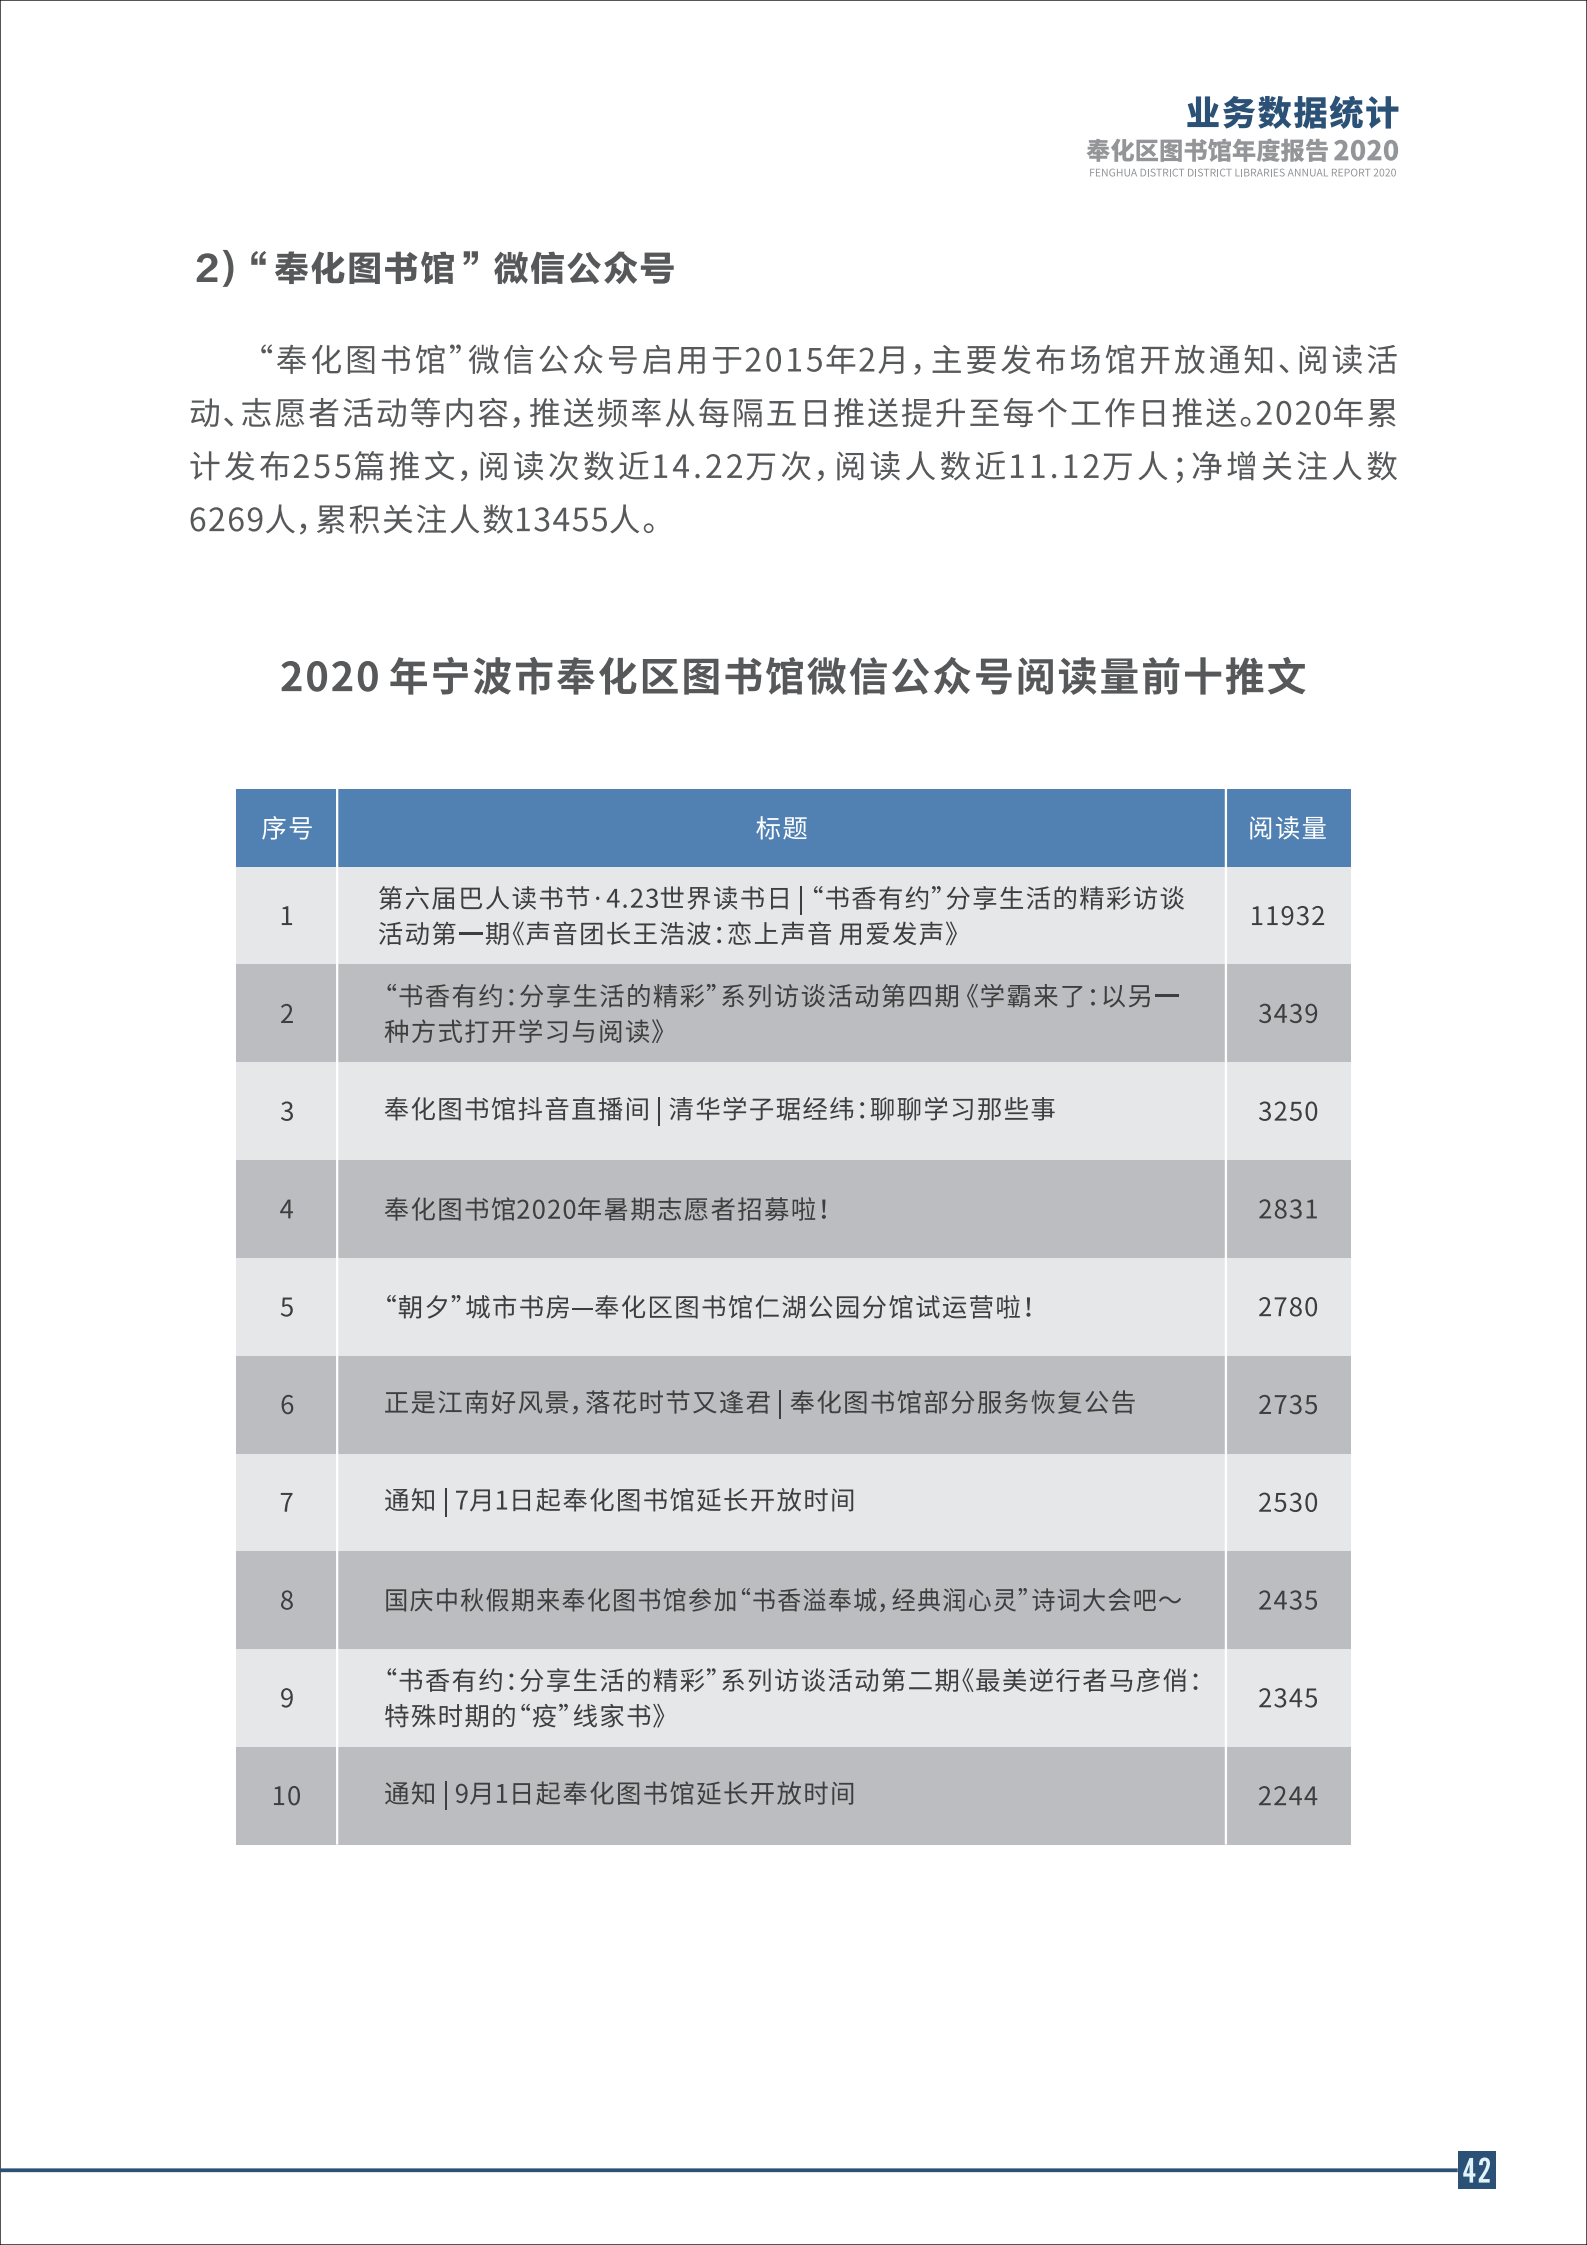 宁波市奉化区图书馆2020年年度报告 终稿_42.png